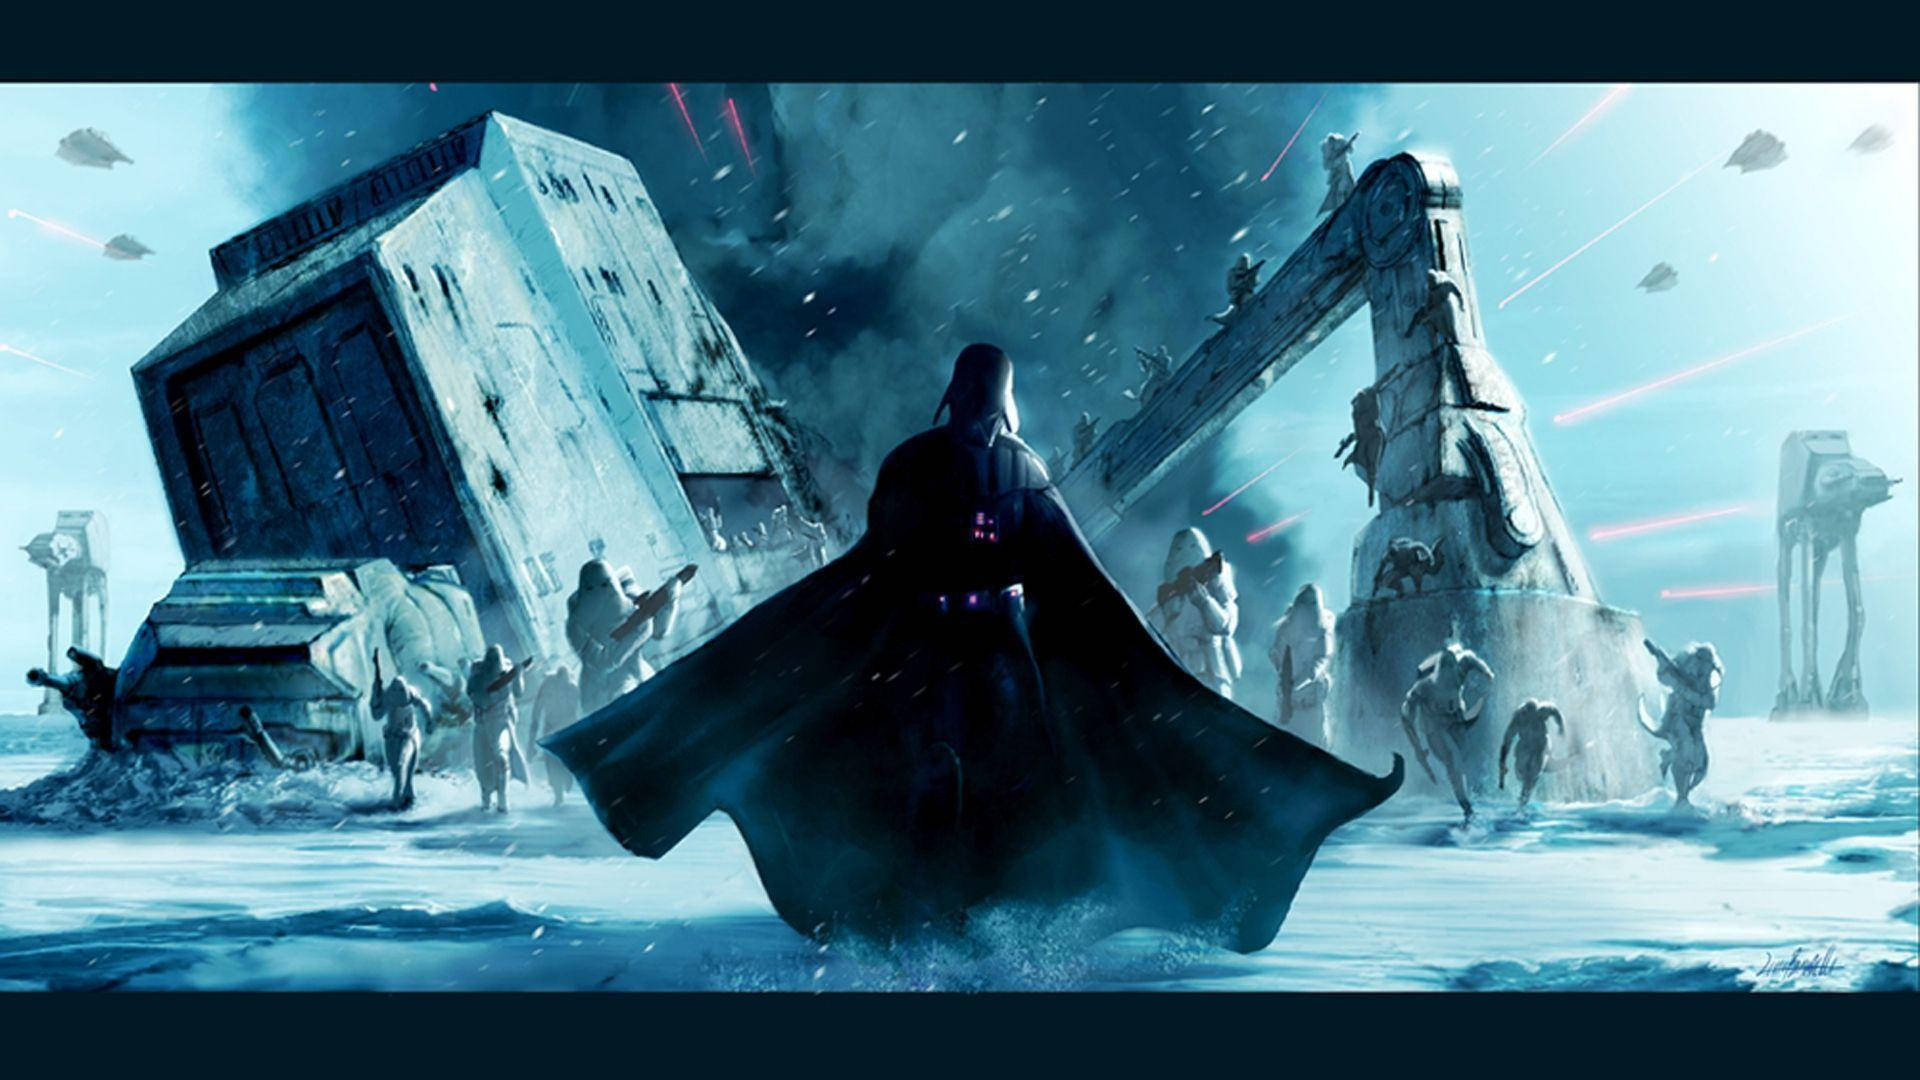 Darth Vader In Star Wars Wallpaper